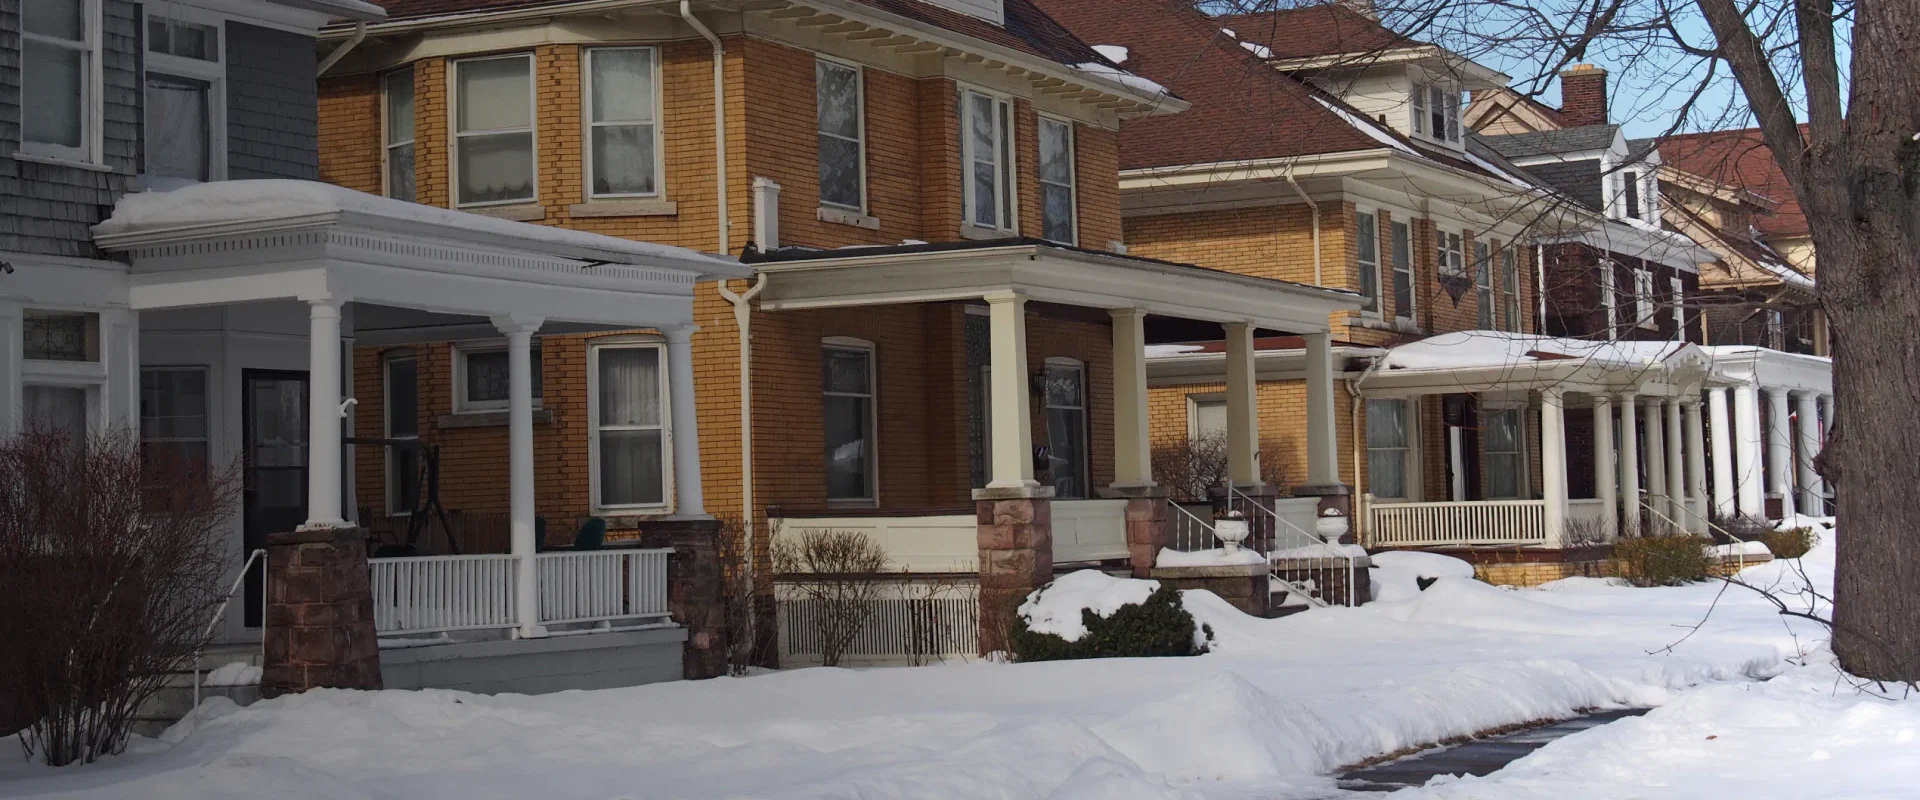 residential community houses on winter season